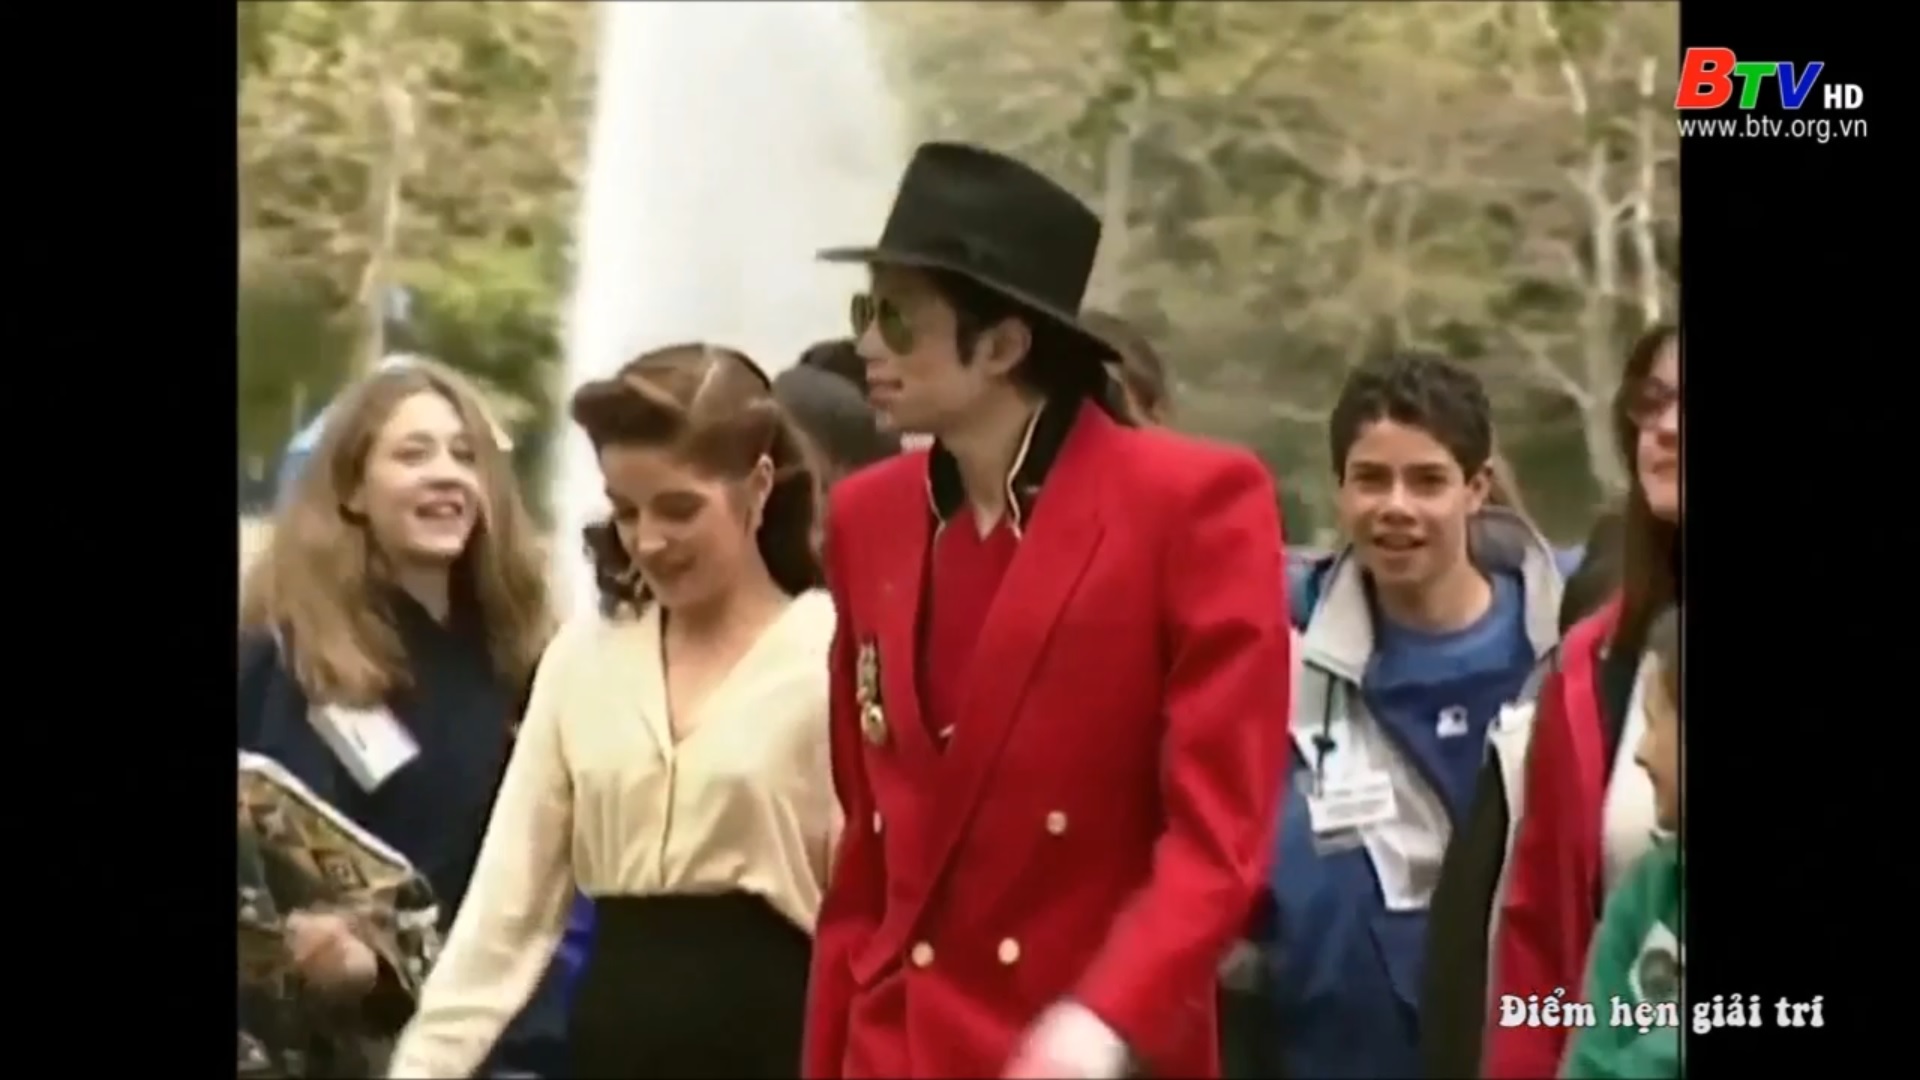 Phim tài liệu về ông vua nhạc POP Michael Jackson